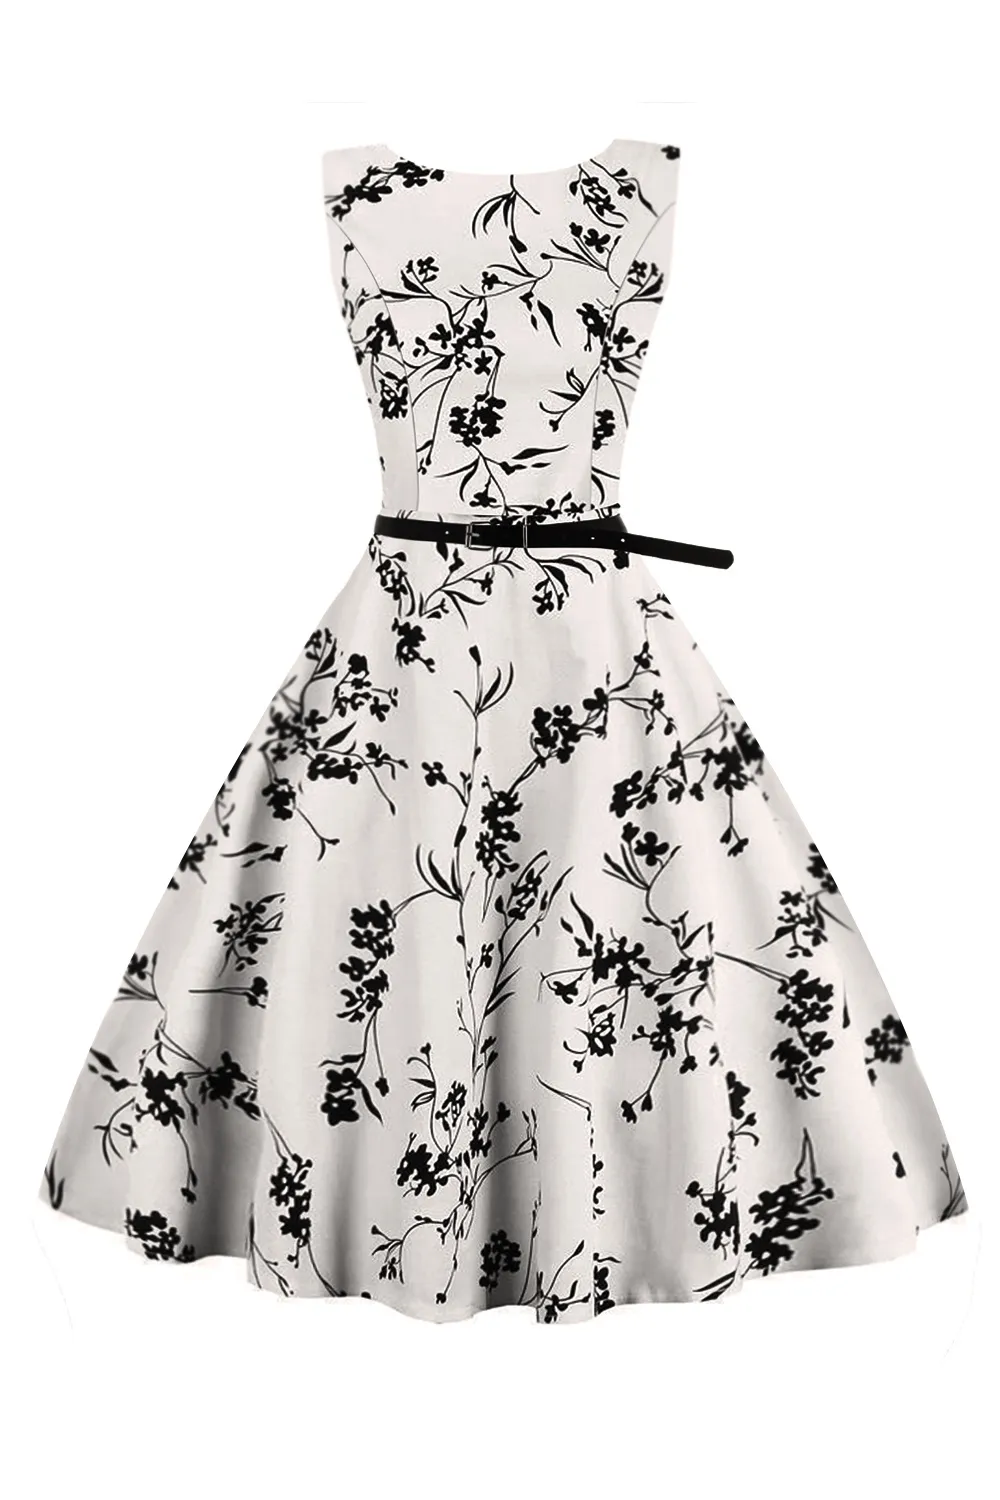 Bläck panting stil vintage klänning 50s 60s retro för kvinnor blommor tryckta korta festklänningar med bälte vestido vintage fs0005